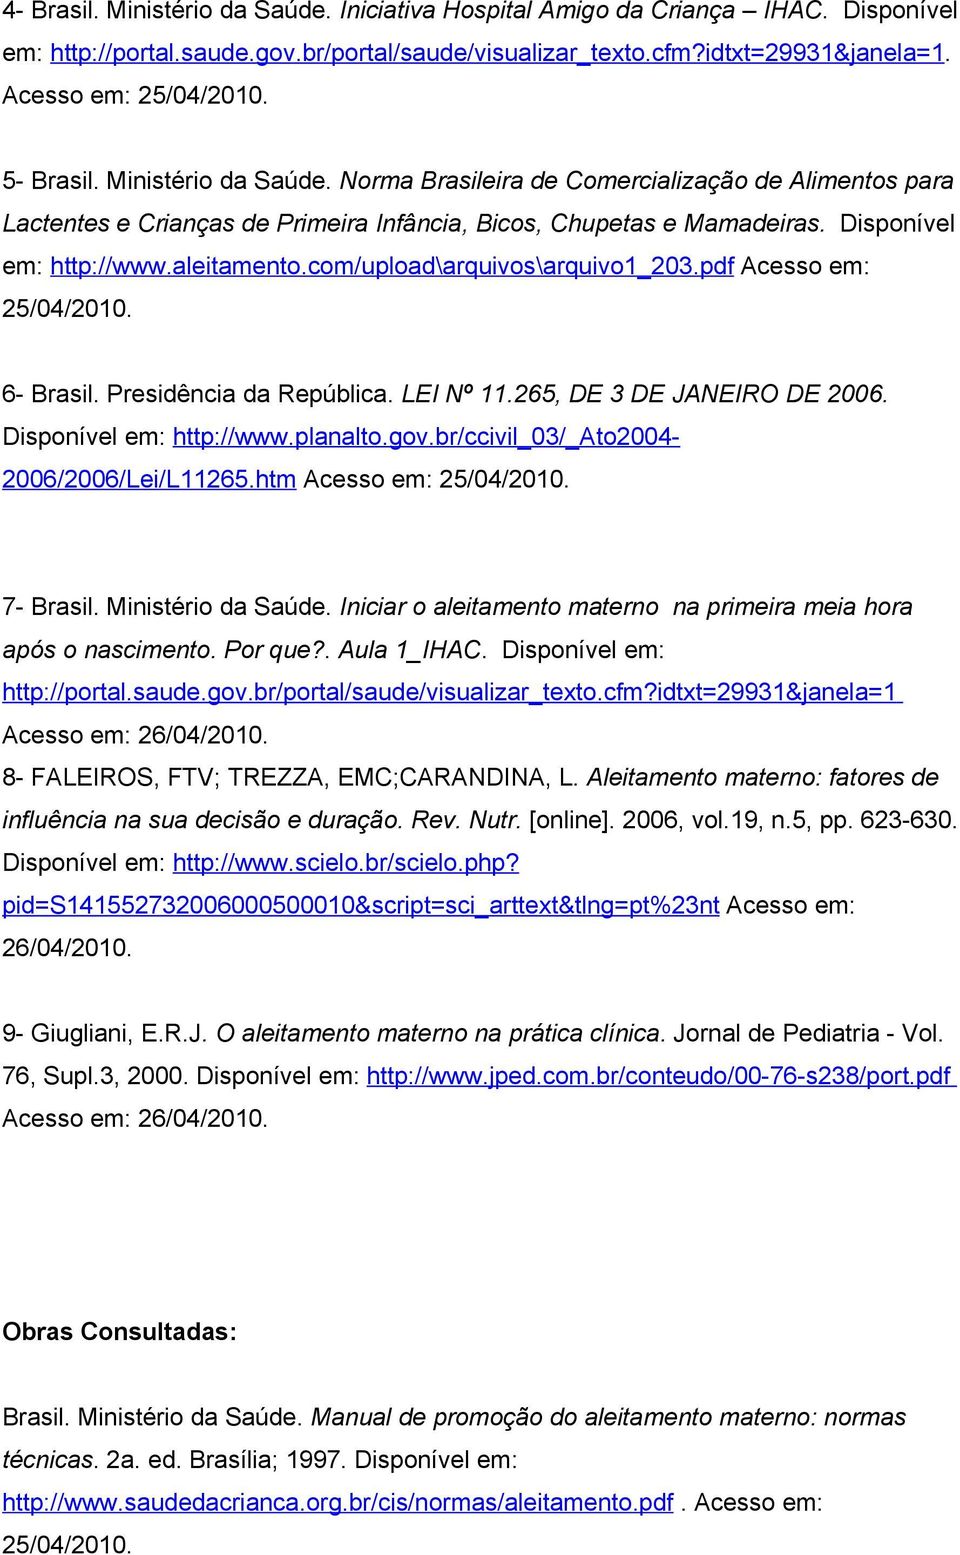 cm/uplad\arquivs\arquiv1_203.pdf Acess em: 25/04/2010. 6- Brasil. Presidência da República. LEI Nº 11.265, DE 3 DE JANEIRO DE 2006. Dispnível em: http://www.planalt.gv.